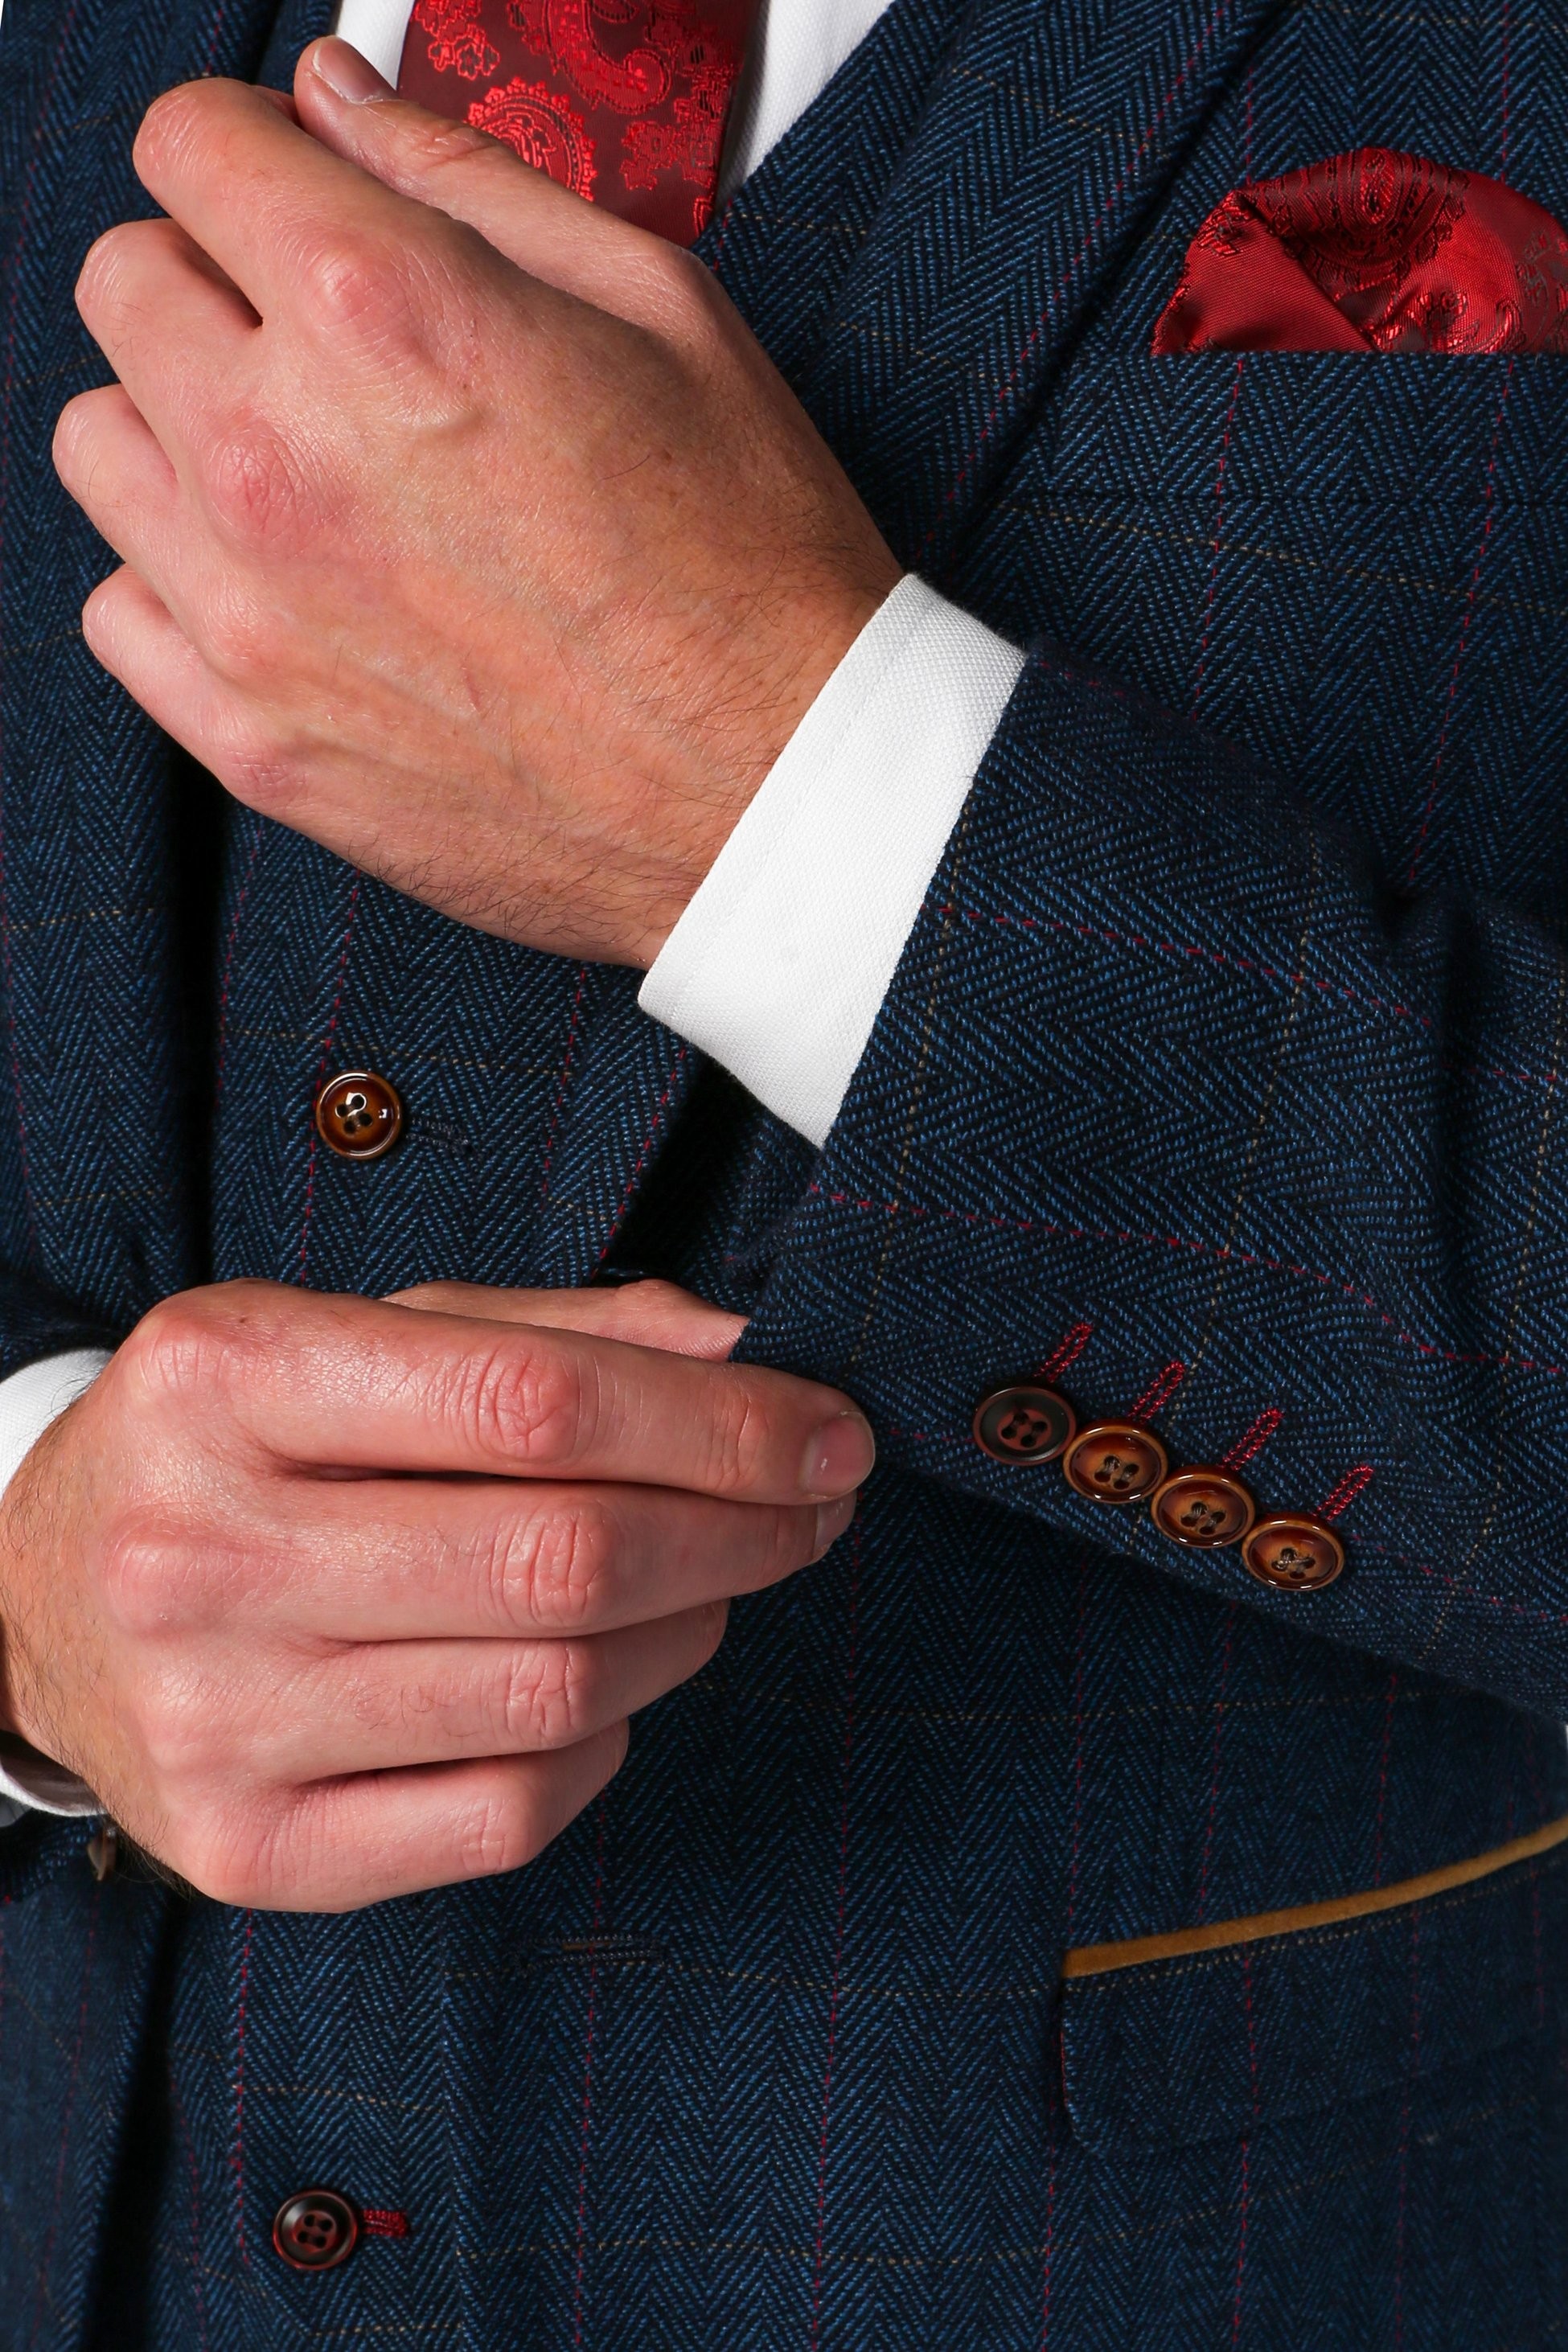 Herren Tweed Herringbone Anzugjacke in Marineblau, Blazer für Hochzeiten und Geschäftsanlässe, Taillierter Schnitt